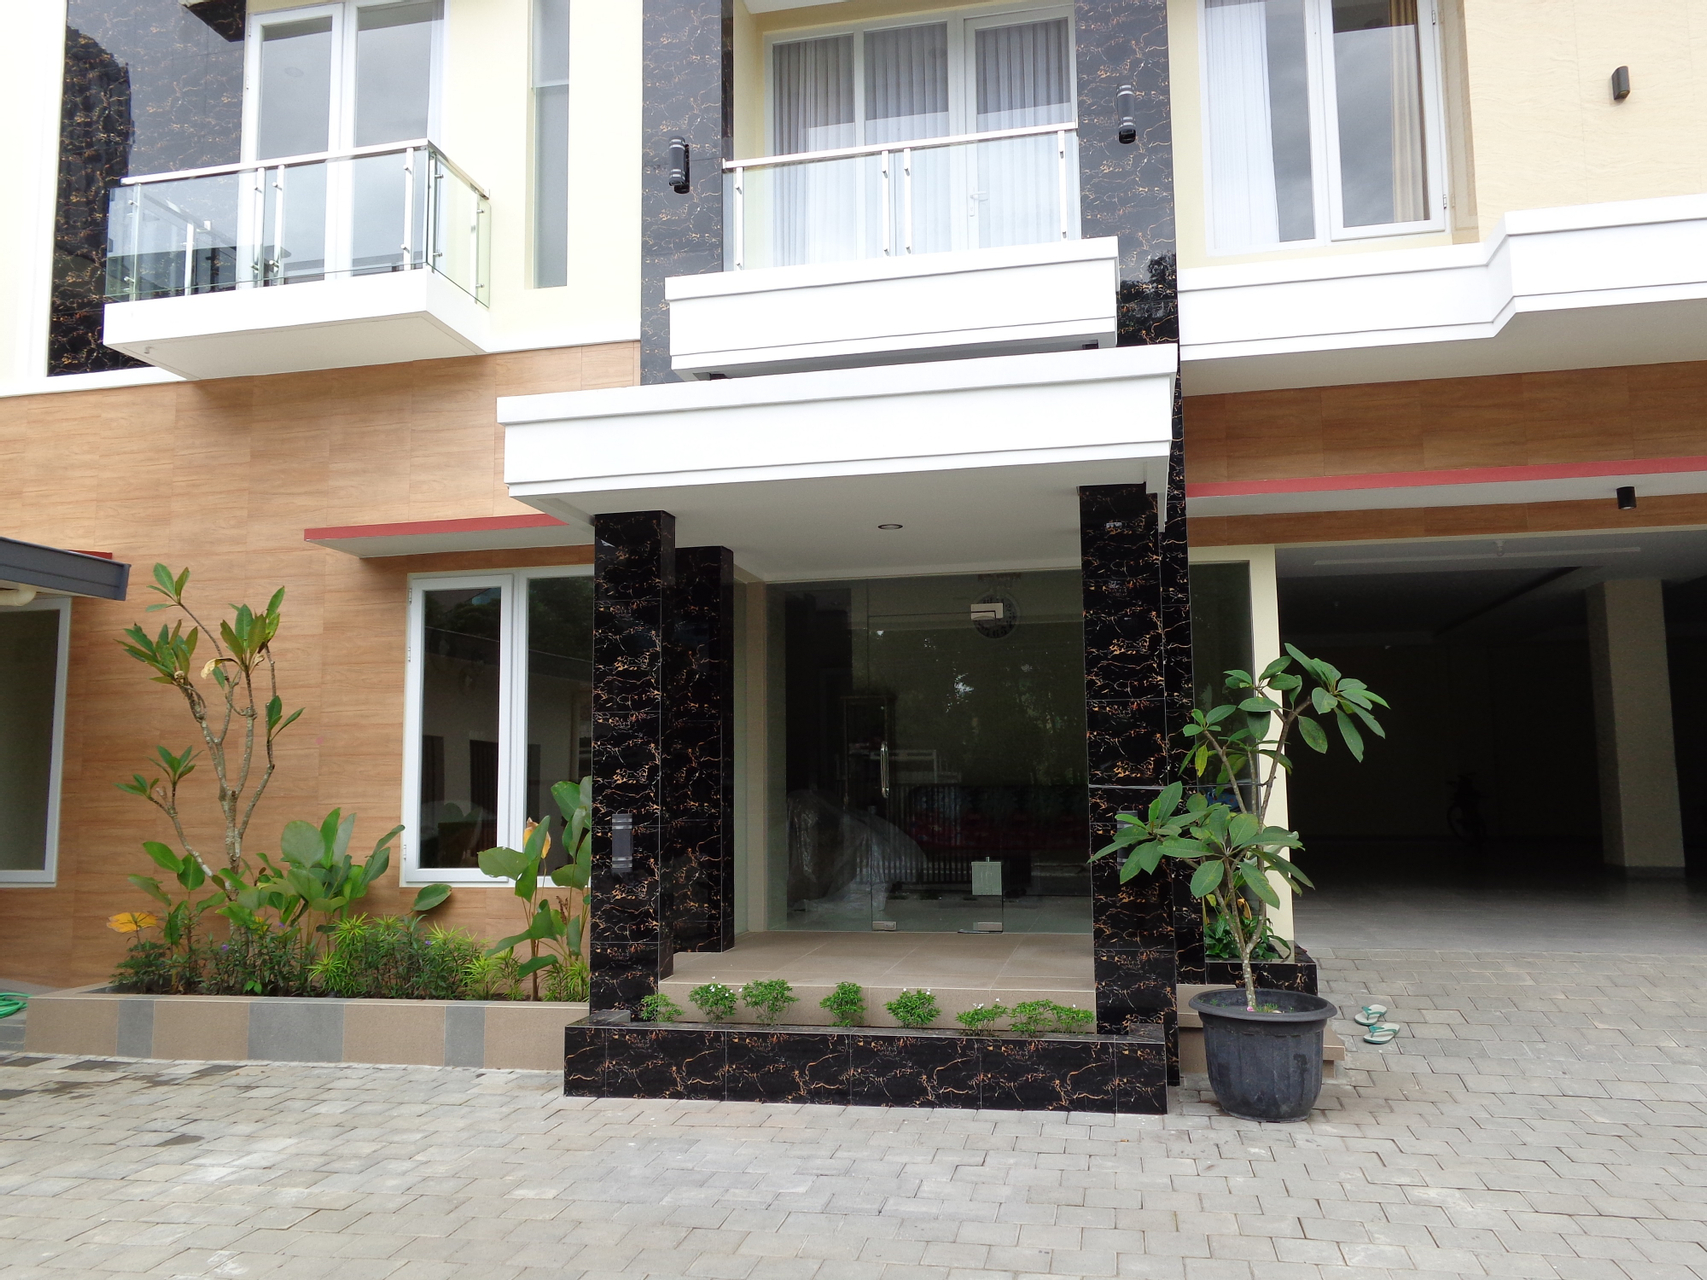 Exterior & Views 2, Diva Residence, Yogyakarta